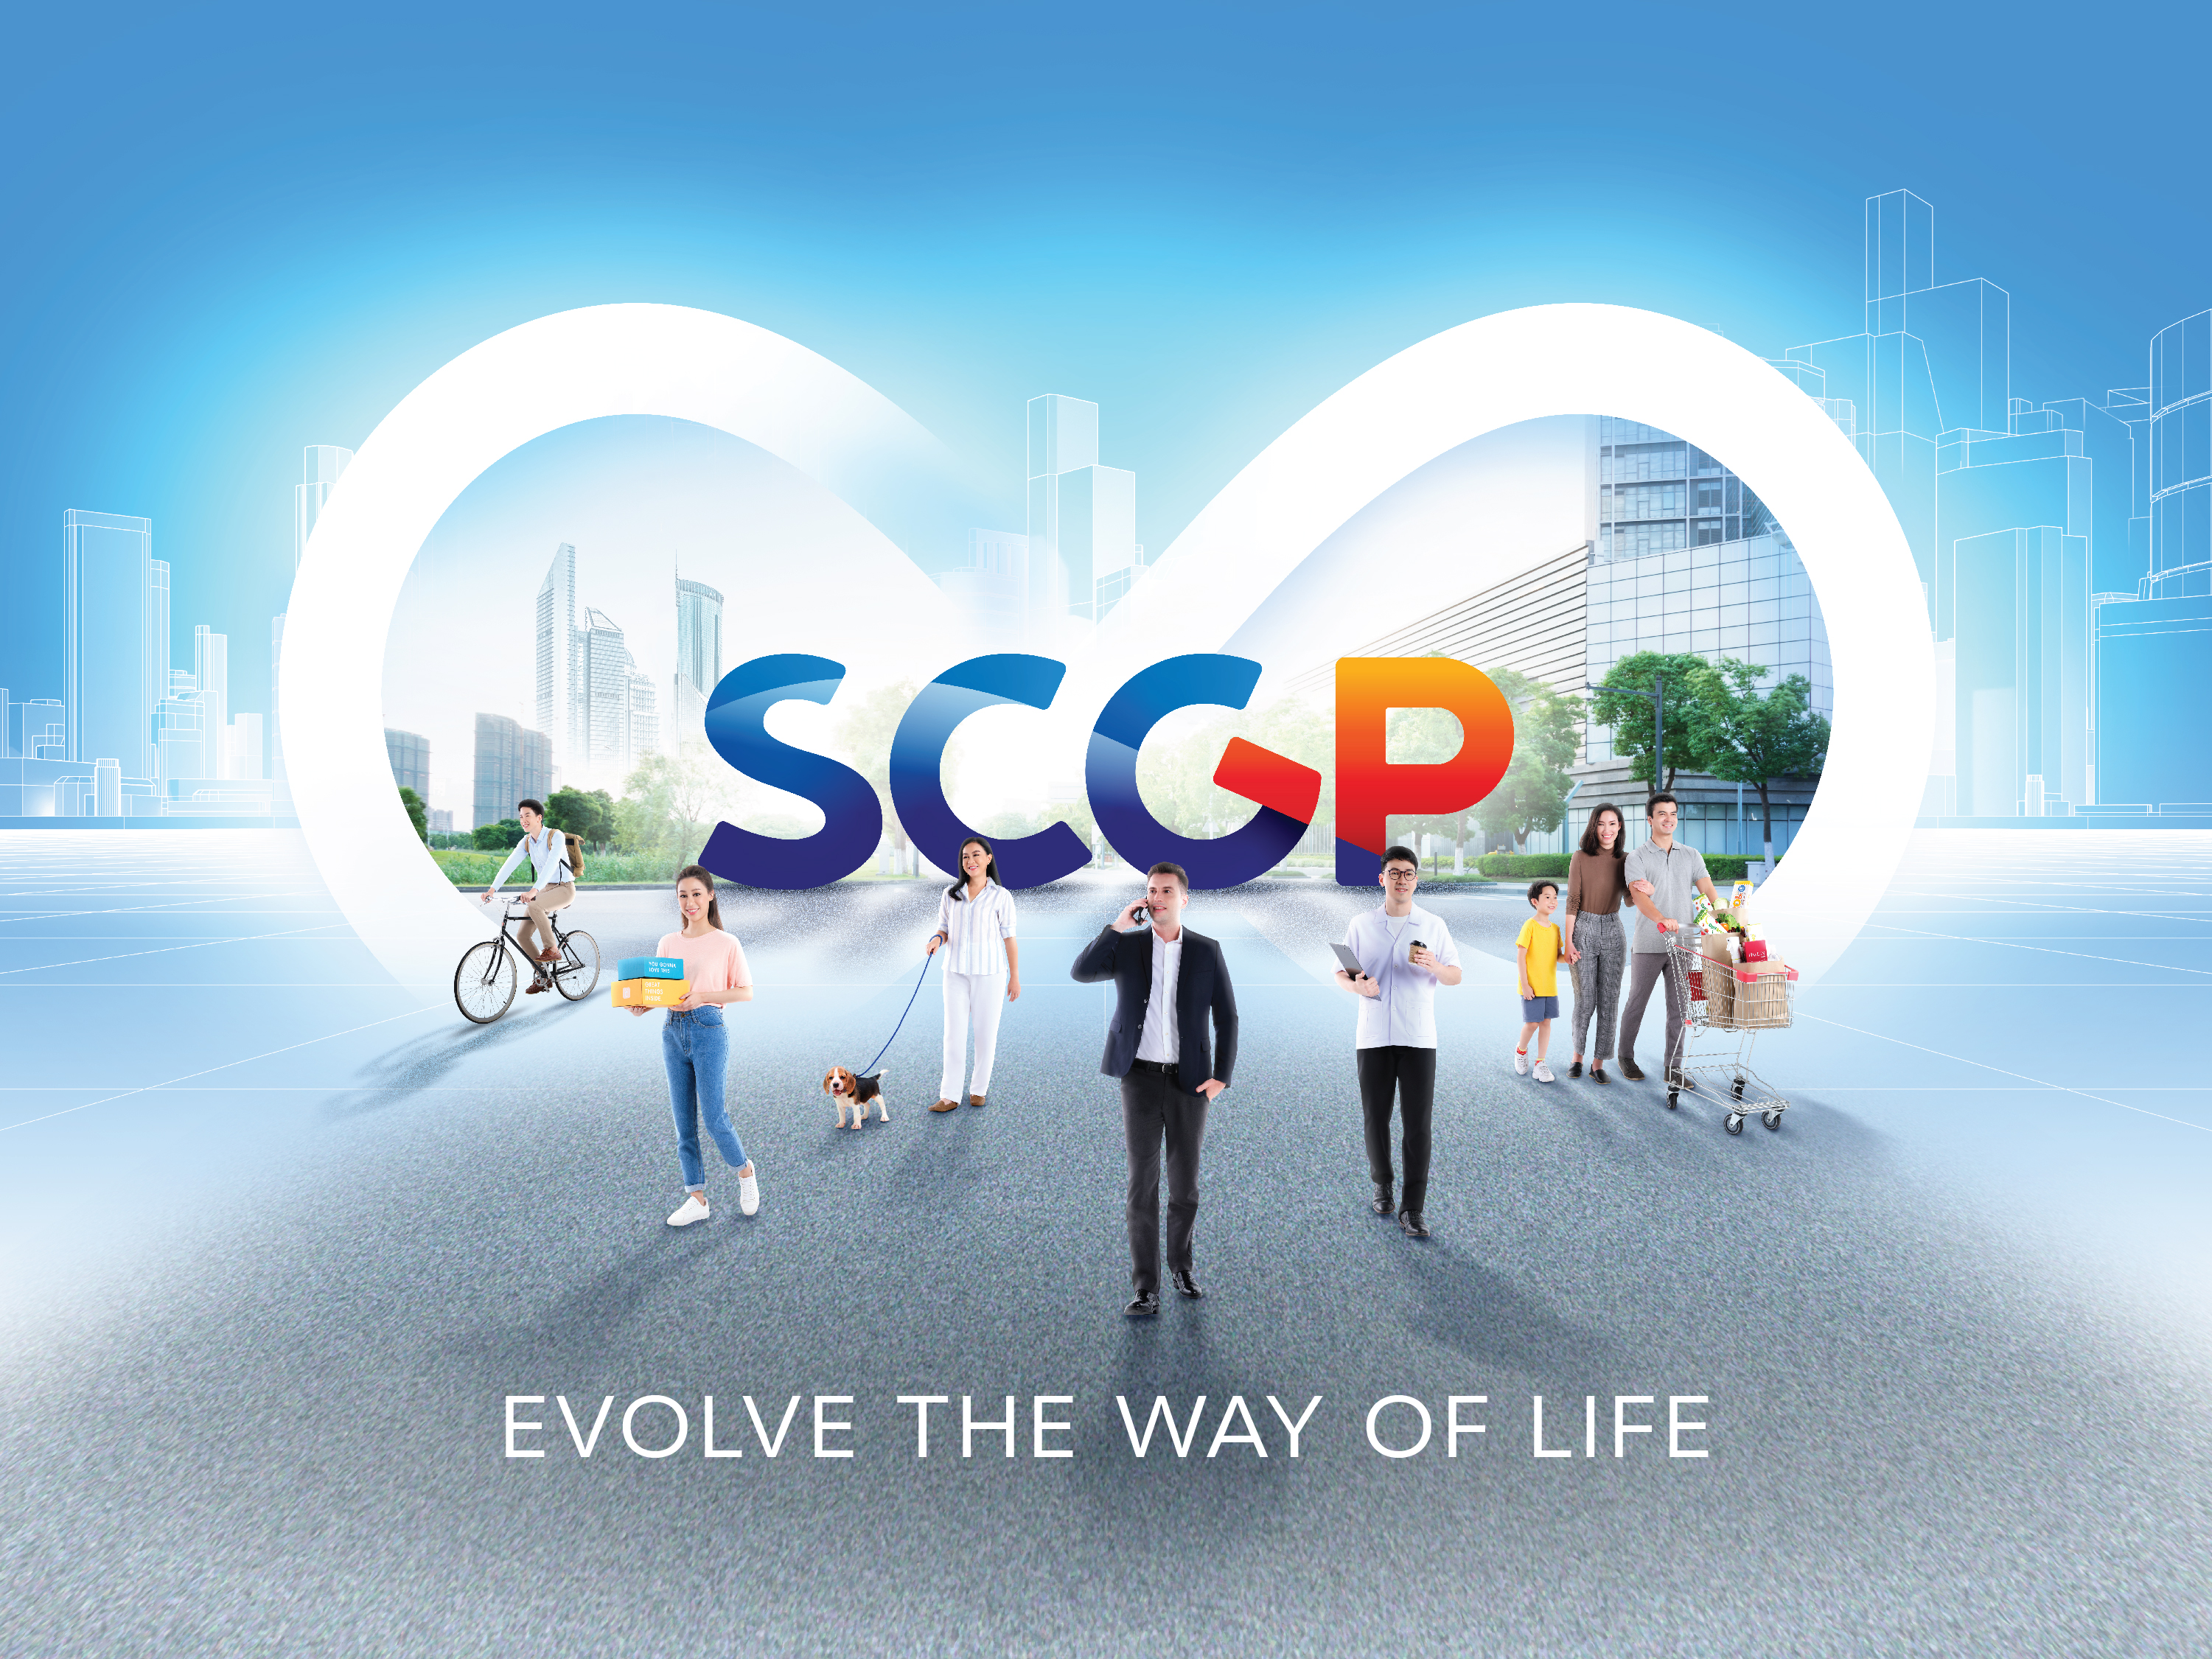 SCGP ปรับโลโก้องค์กรใหม่ รับวิสัยทัศน์ก้าวสู่บริษัทที่ยั่งยืน